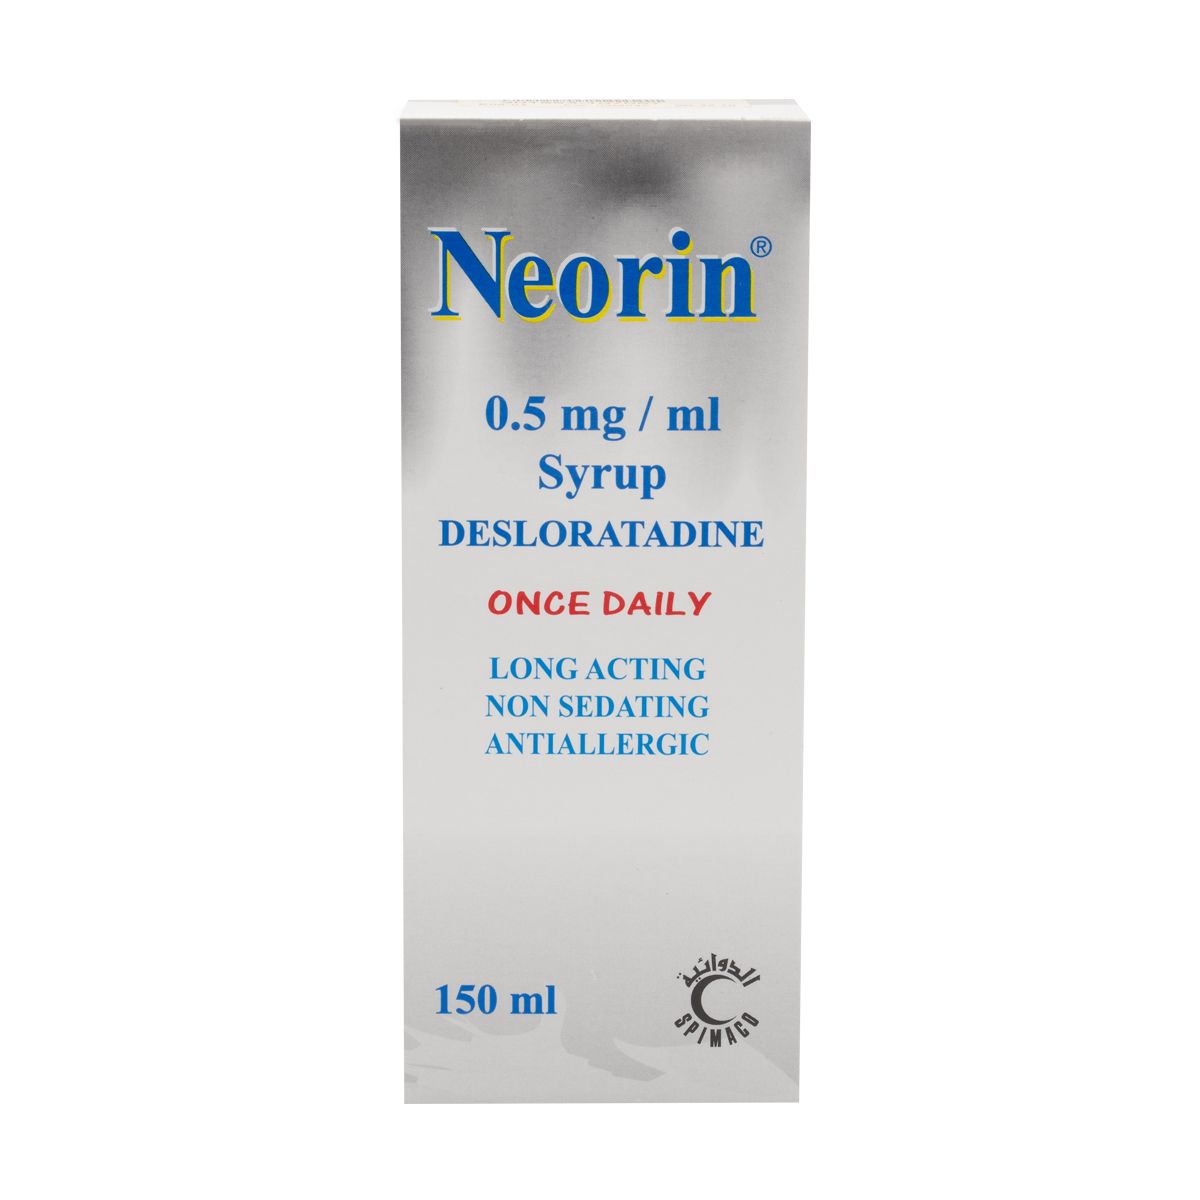 NEORIN 0.5 Mg/Ml Syrup 150Ml